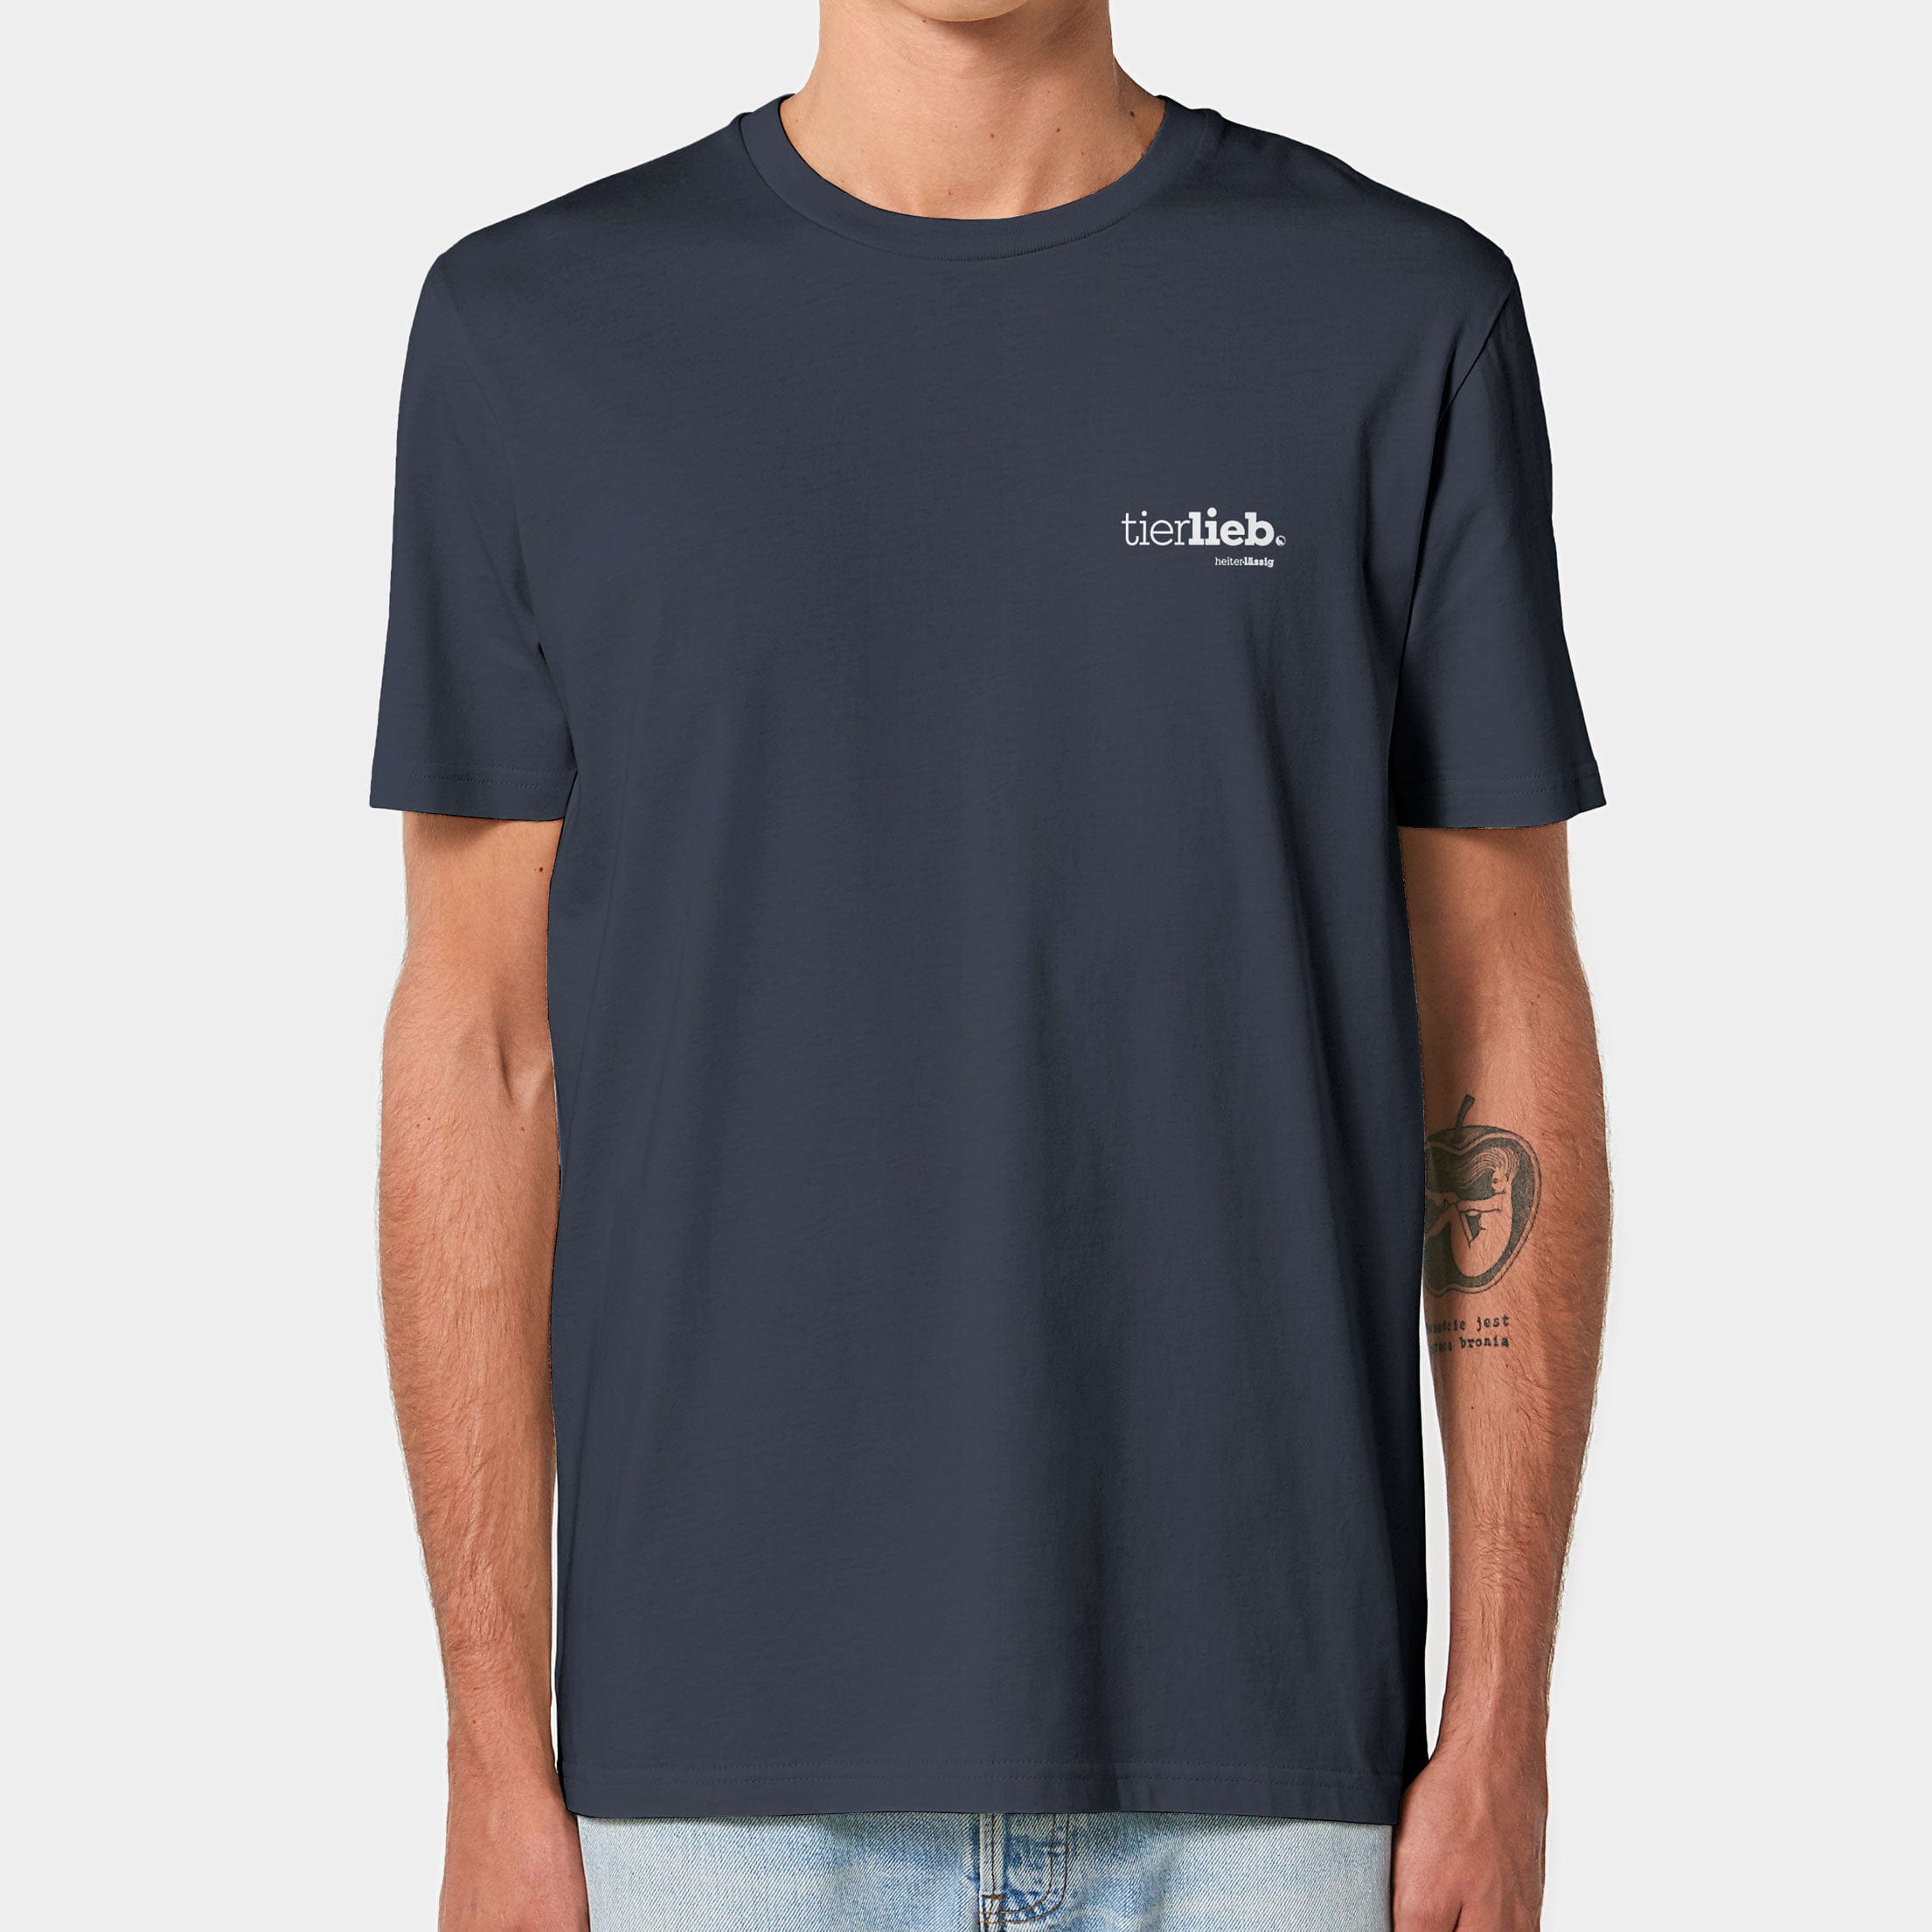 HEITER & LÄSSIG T-Shirt ORIGINAL "tierlieb" XXS / india ink grey - aus nachhaltiger und fairer Produktion